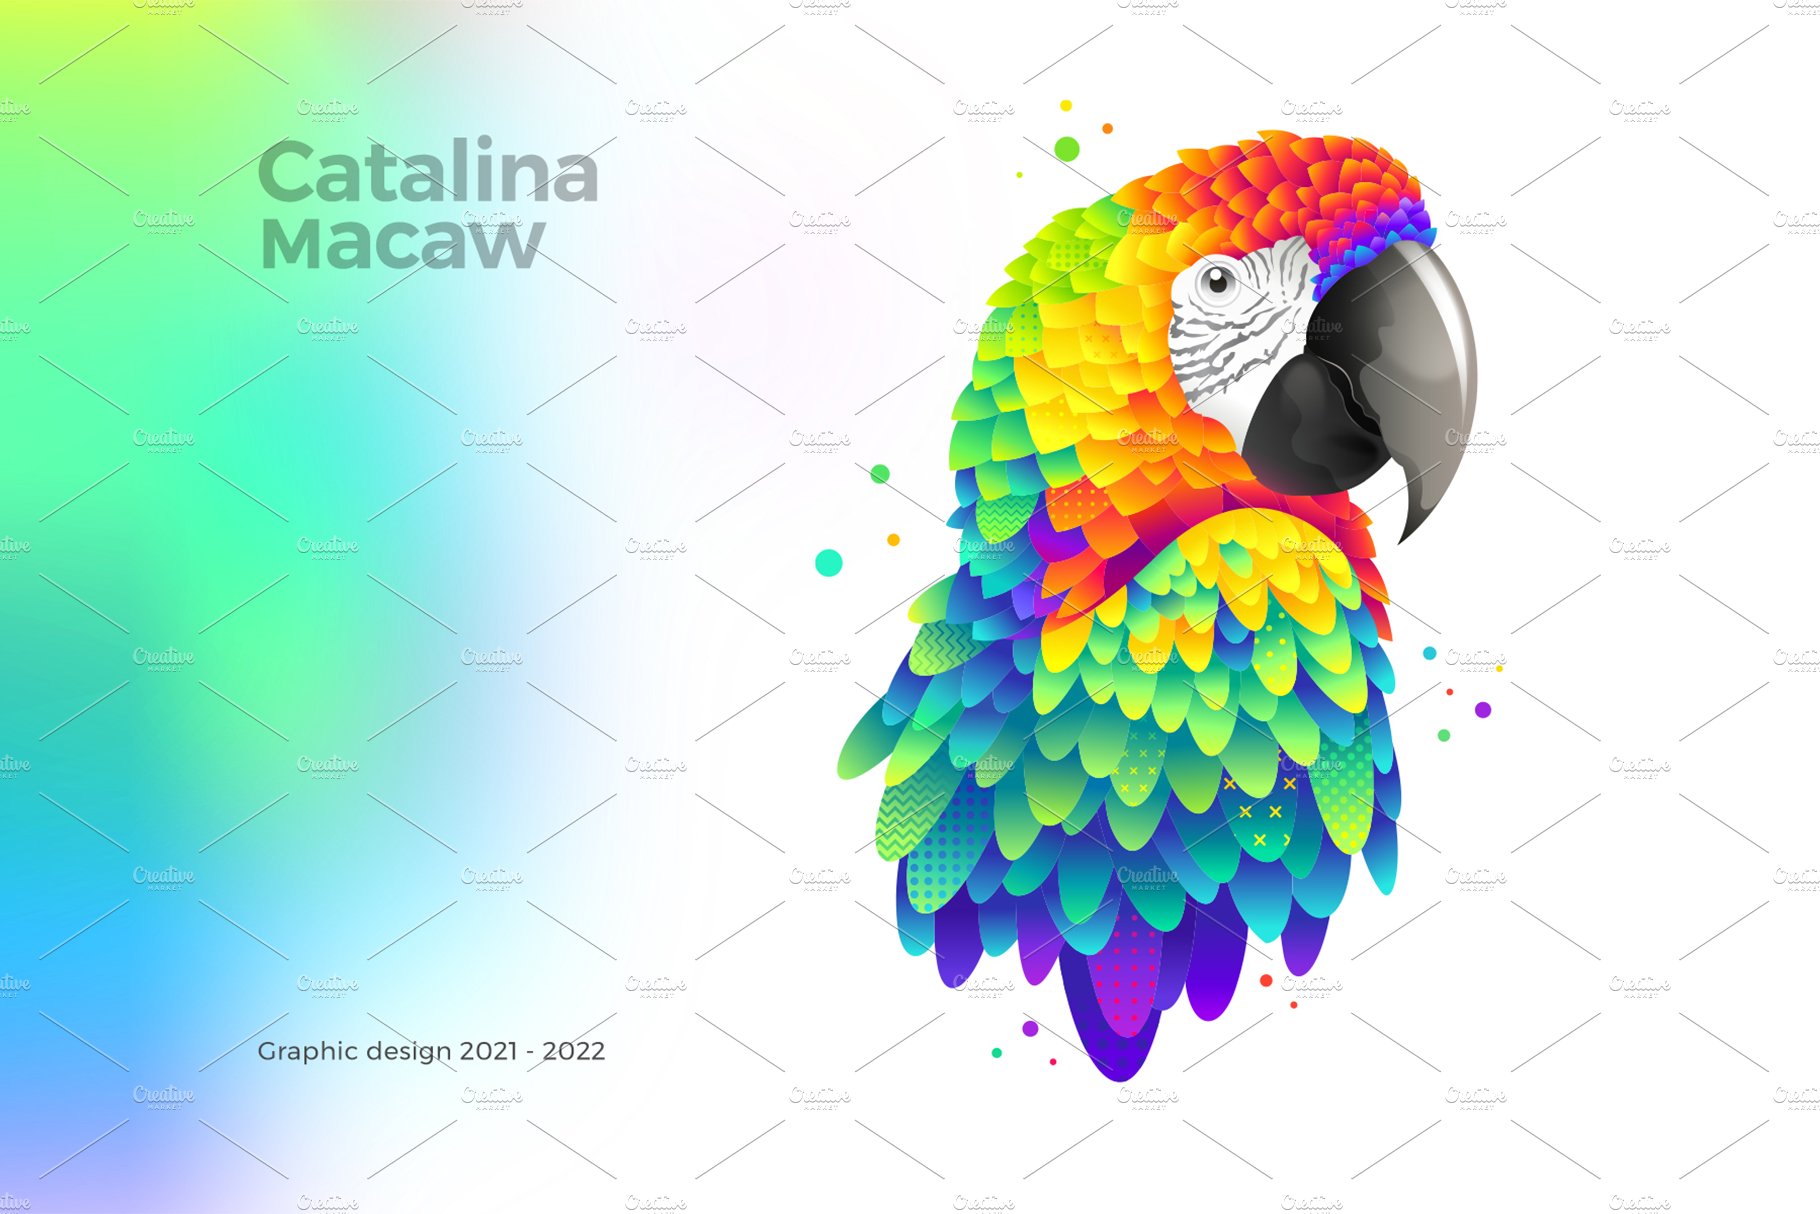 macaw 1 563